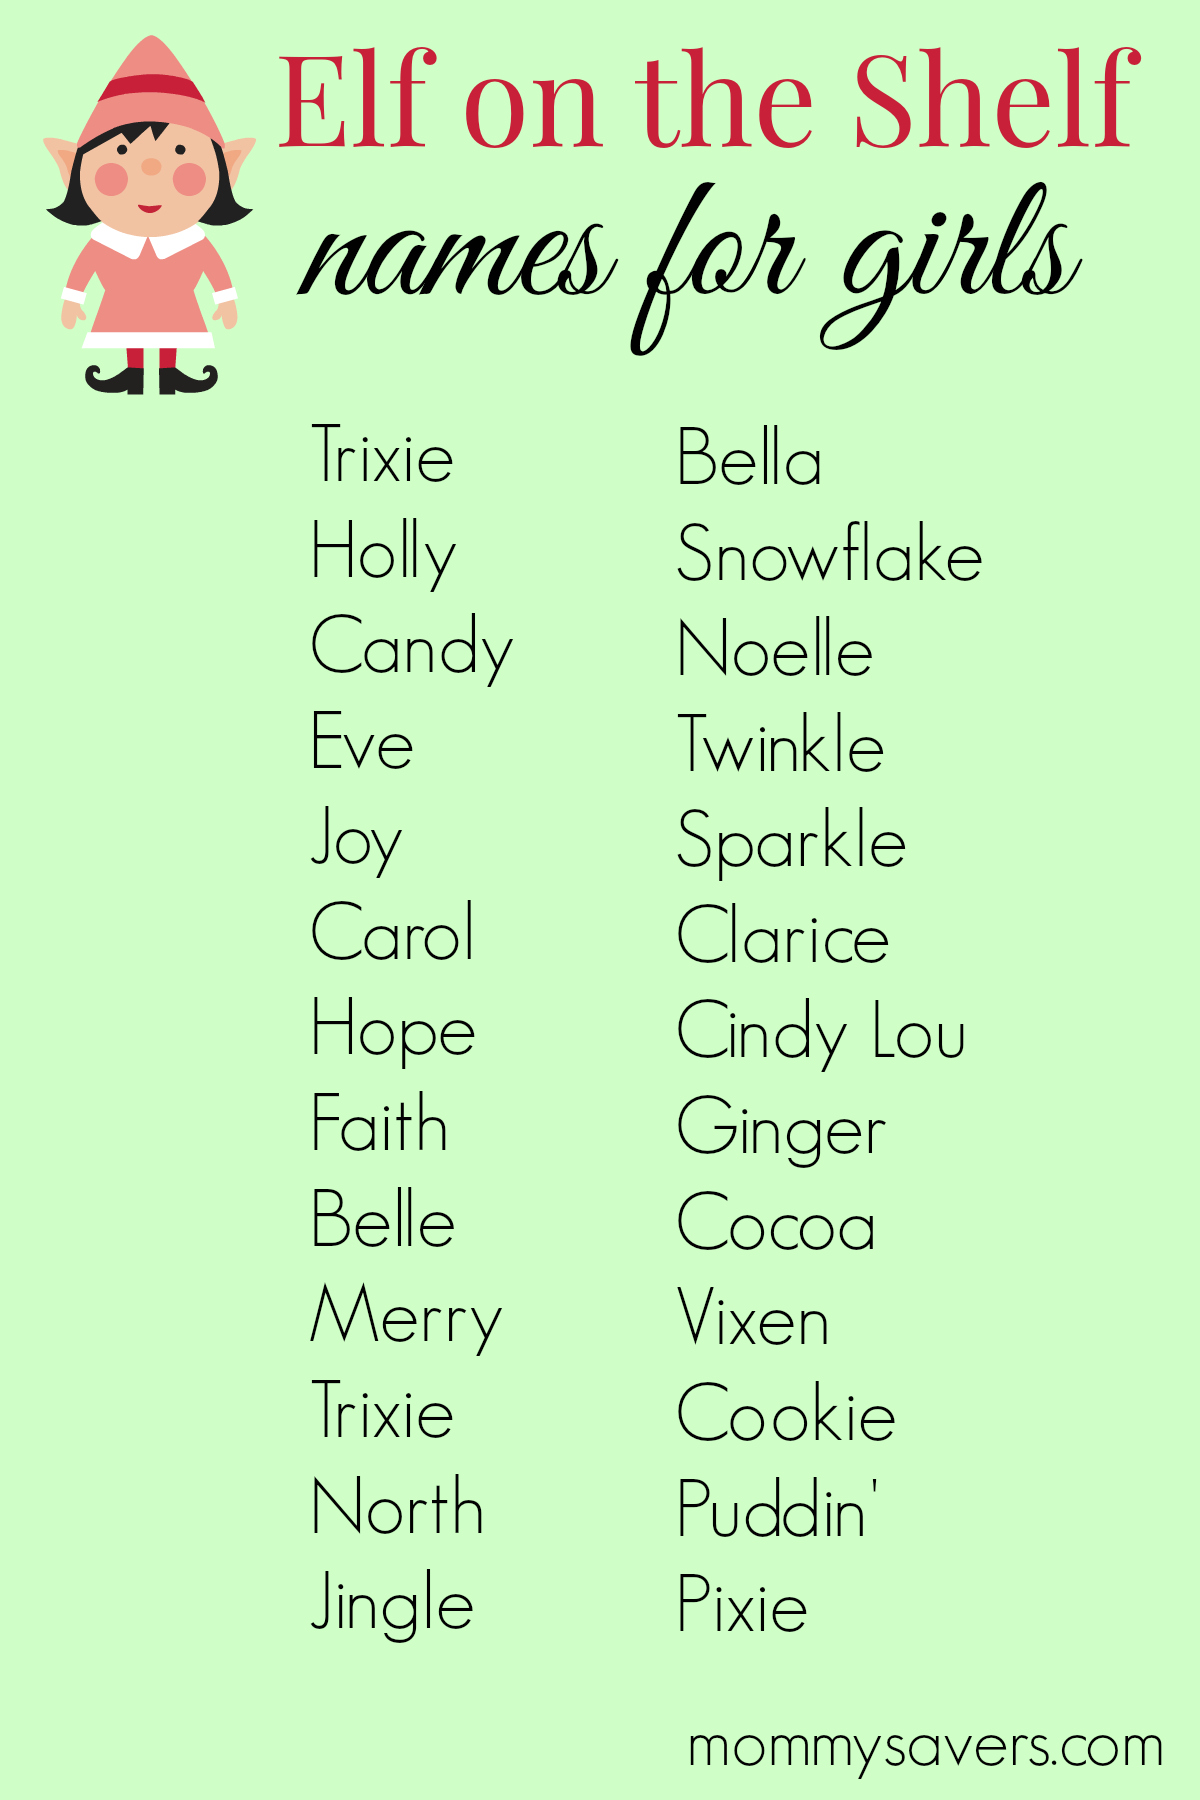 Elf on the Shelf Names for Girls - Mommysavers
